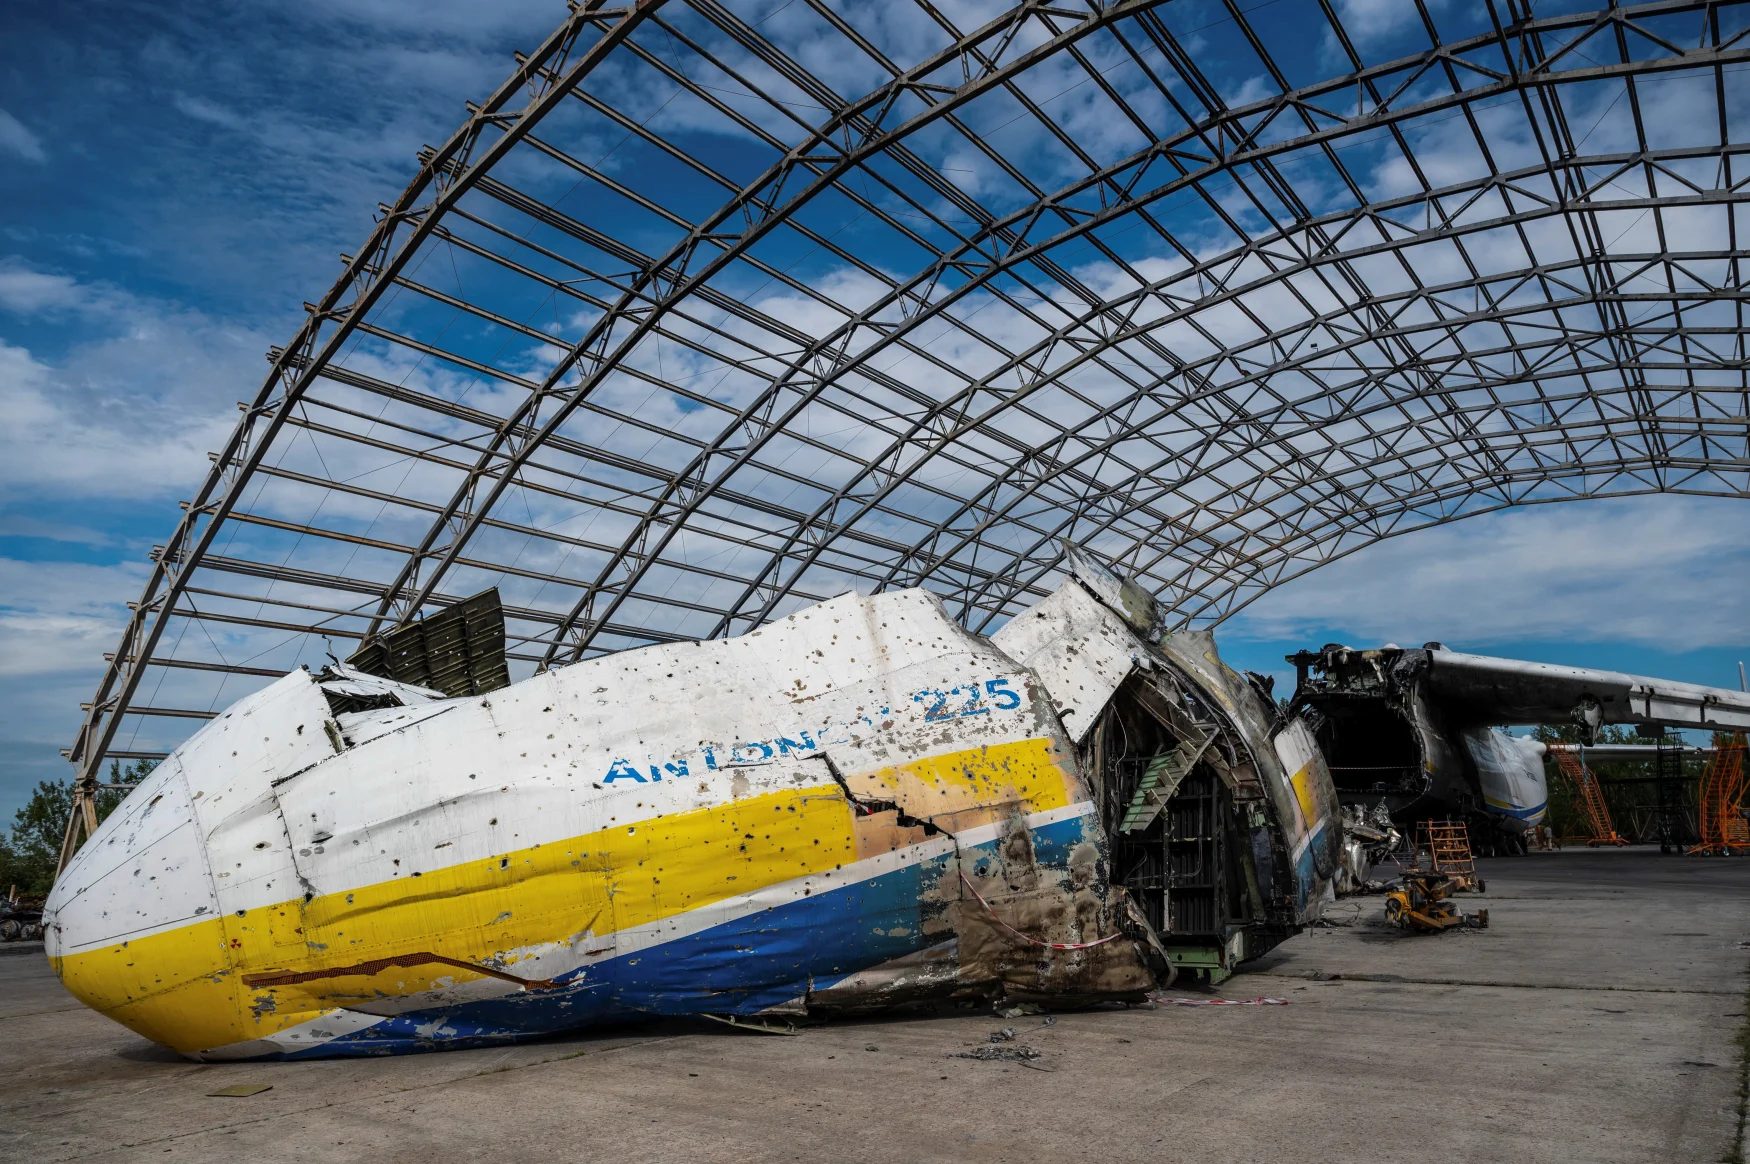 Sebuah pesawat kargo Antonov An-225 Mriya, pesawat terbesar di dunia, dihancurkan oleh pasukan Rusia di tengah serangan berkelanjutan Rusia di Ukraina, terlihat di sebuah lapangan udara di pemukiman Hostomel, di wilayah Kiev, Ukraina 10 Agustus 2022. REUTERS/Vyacheslav Ratynsky